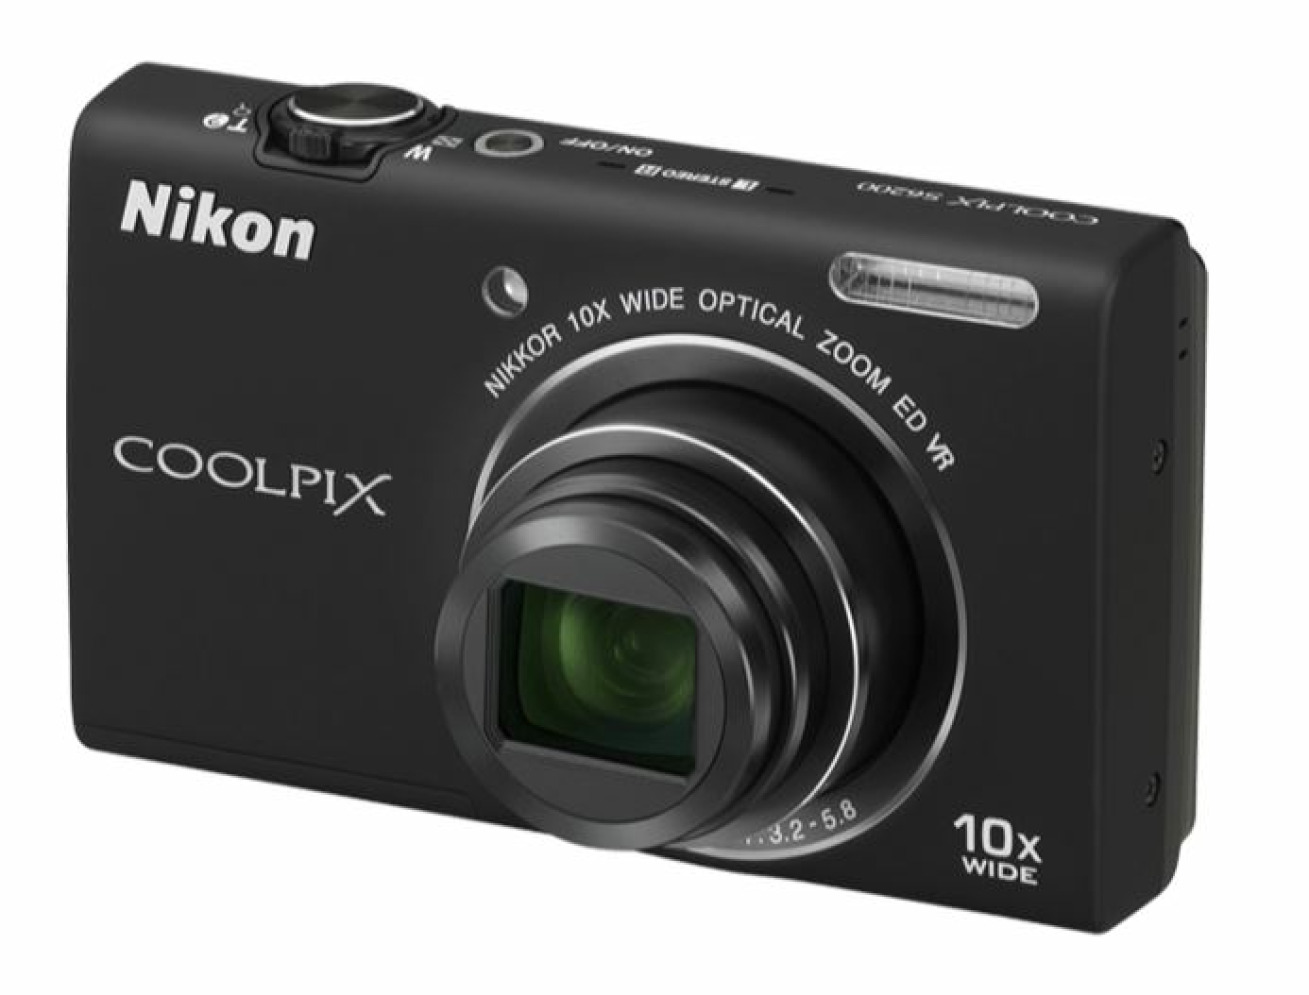 Camera Nikon S6200 New